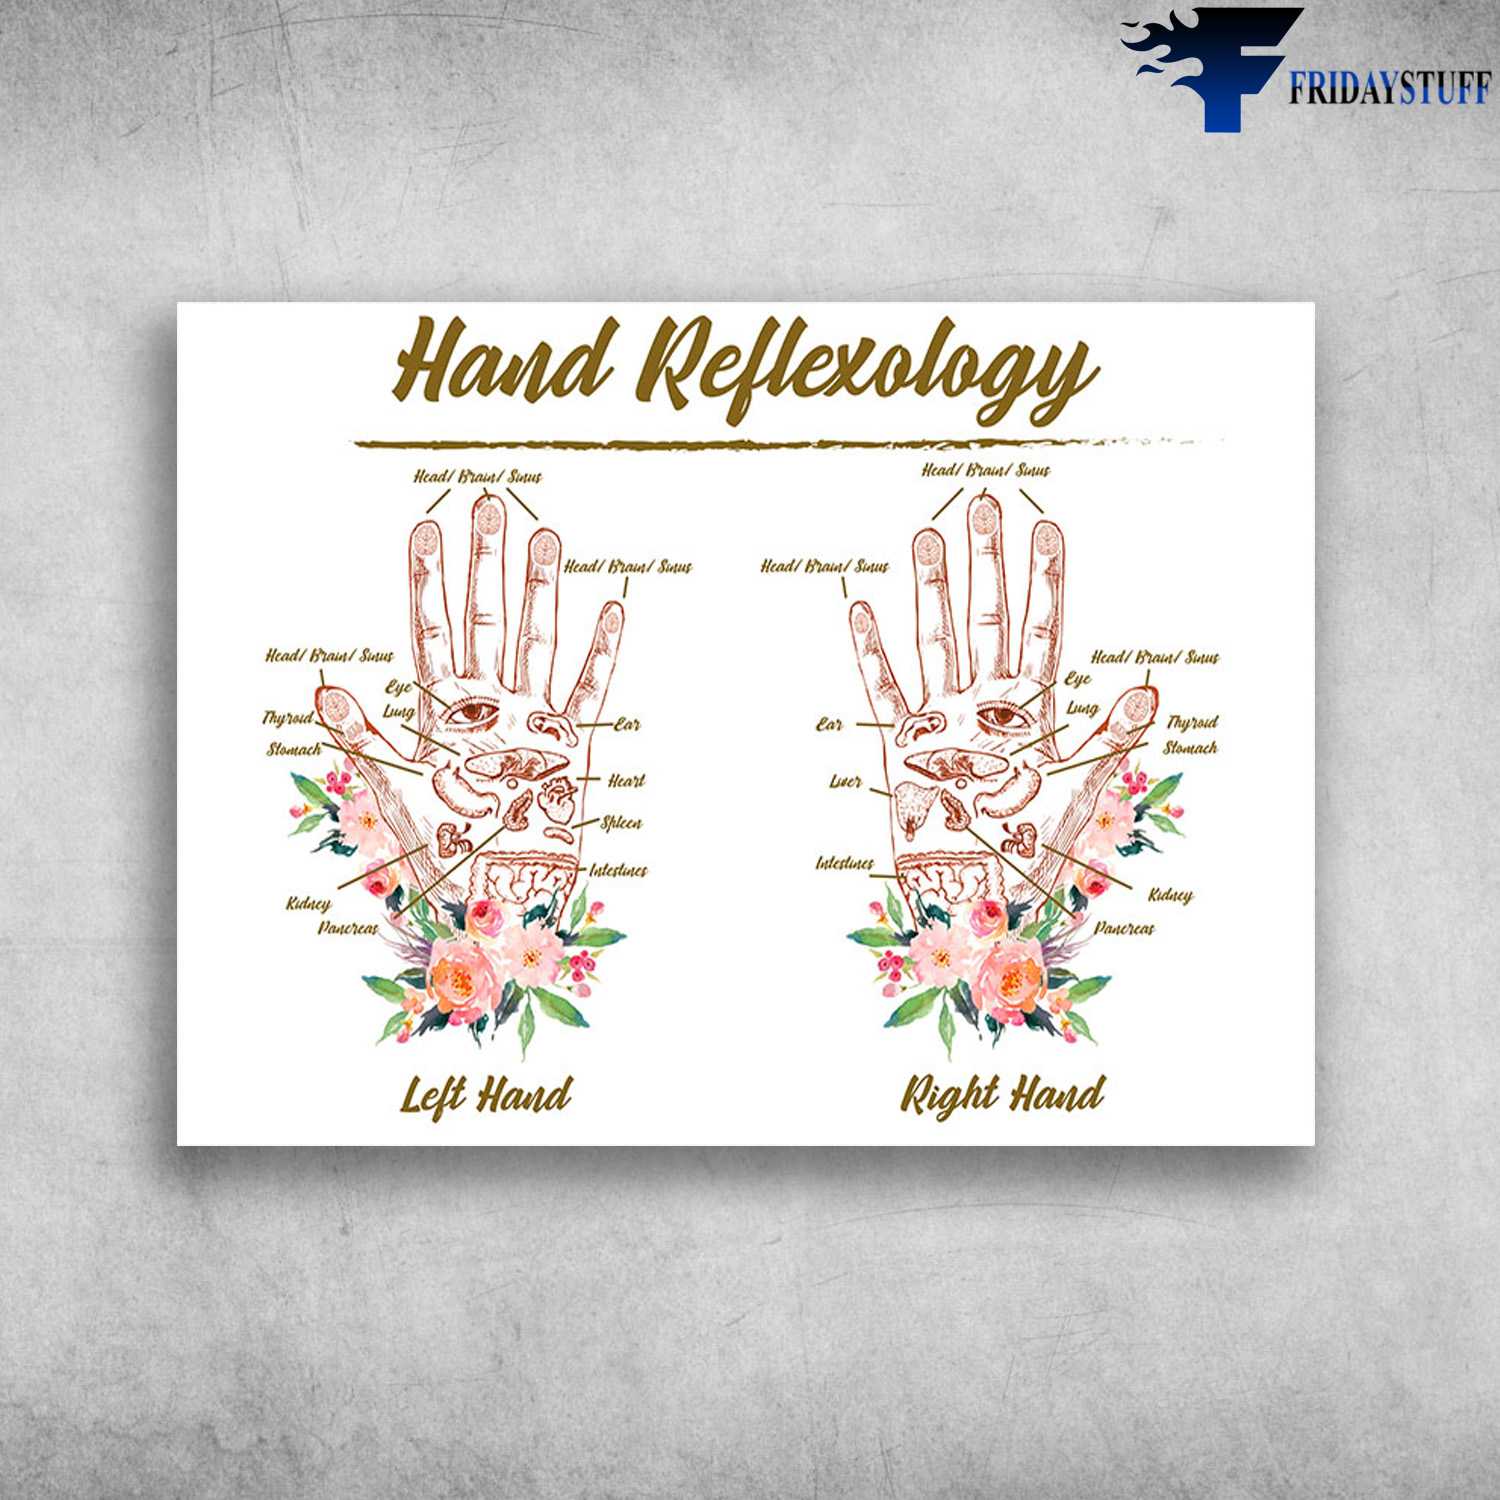 Hand Reflexology - Flower Hands, Left Hand, Right Hand, Hands Viscera